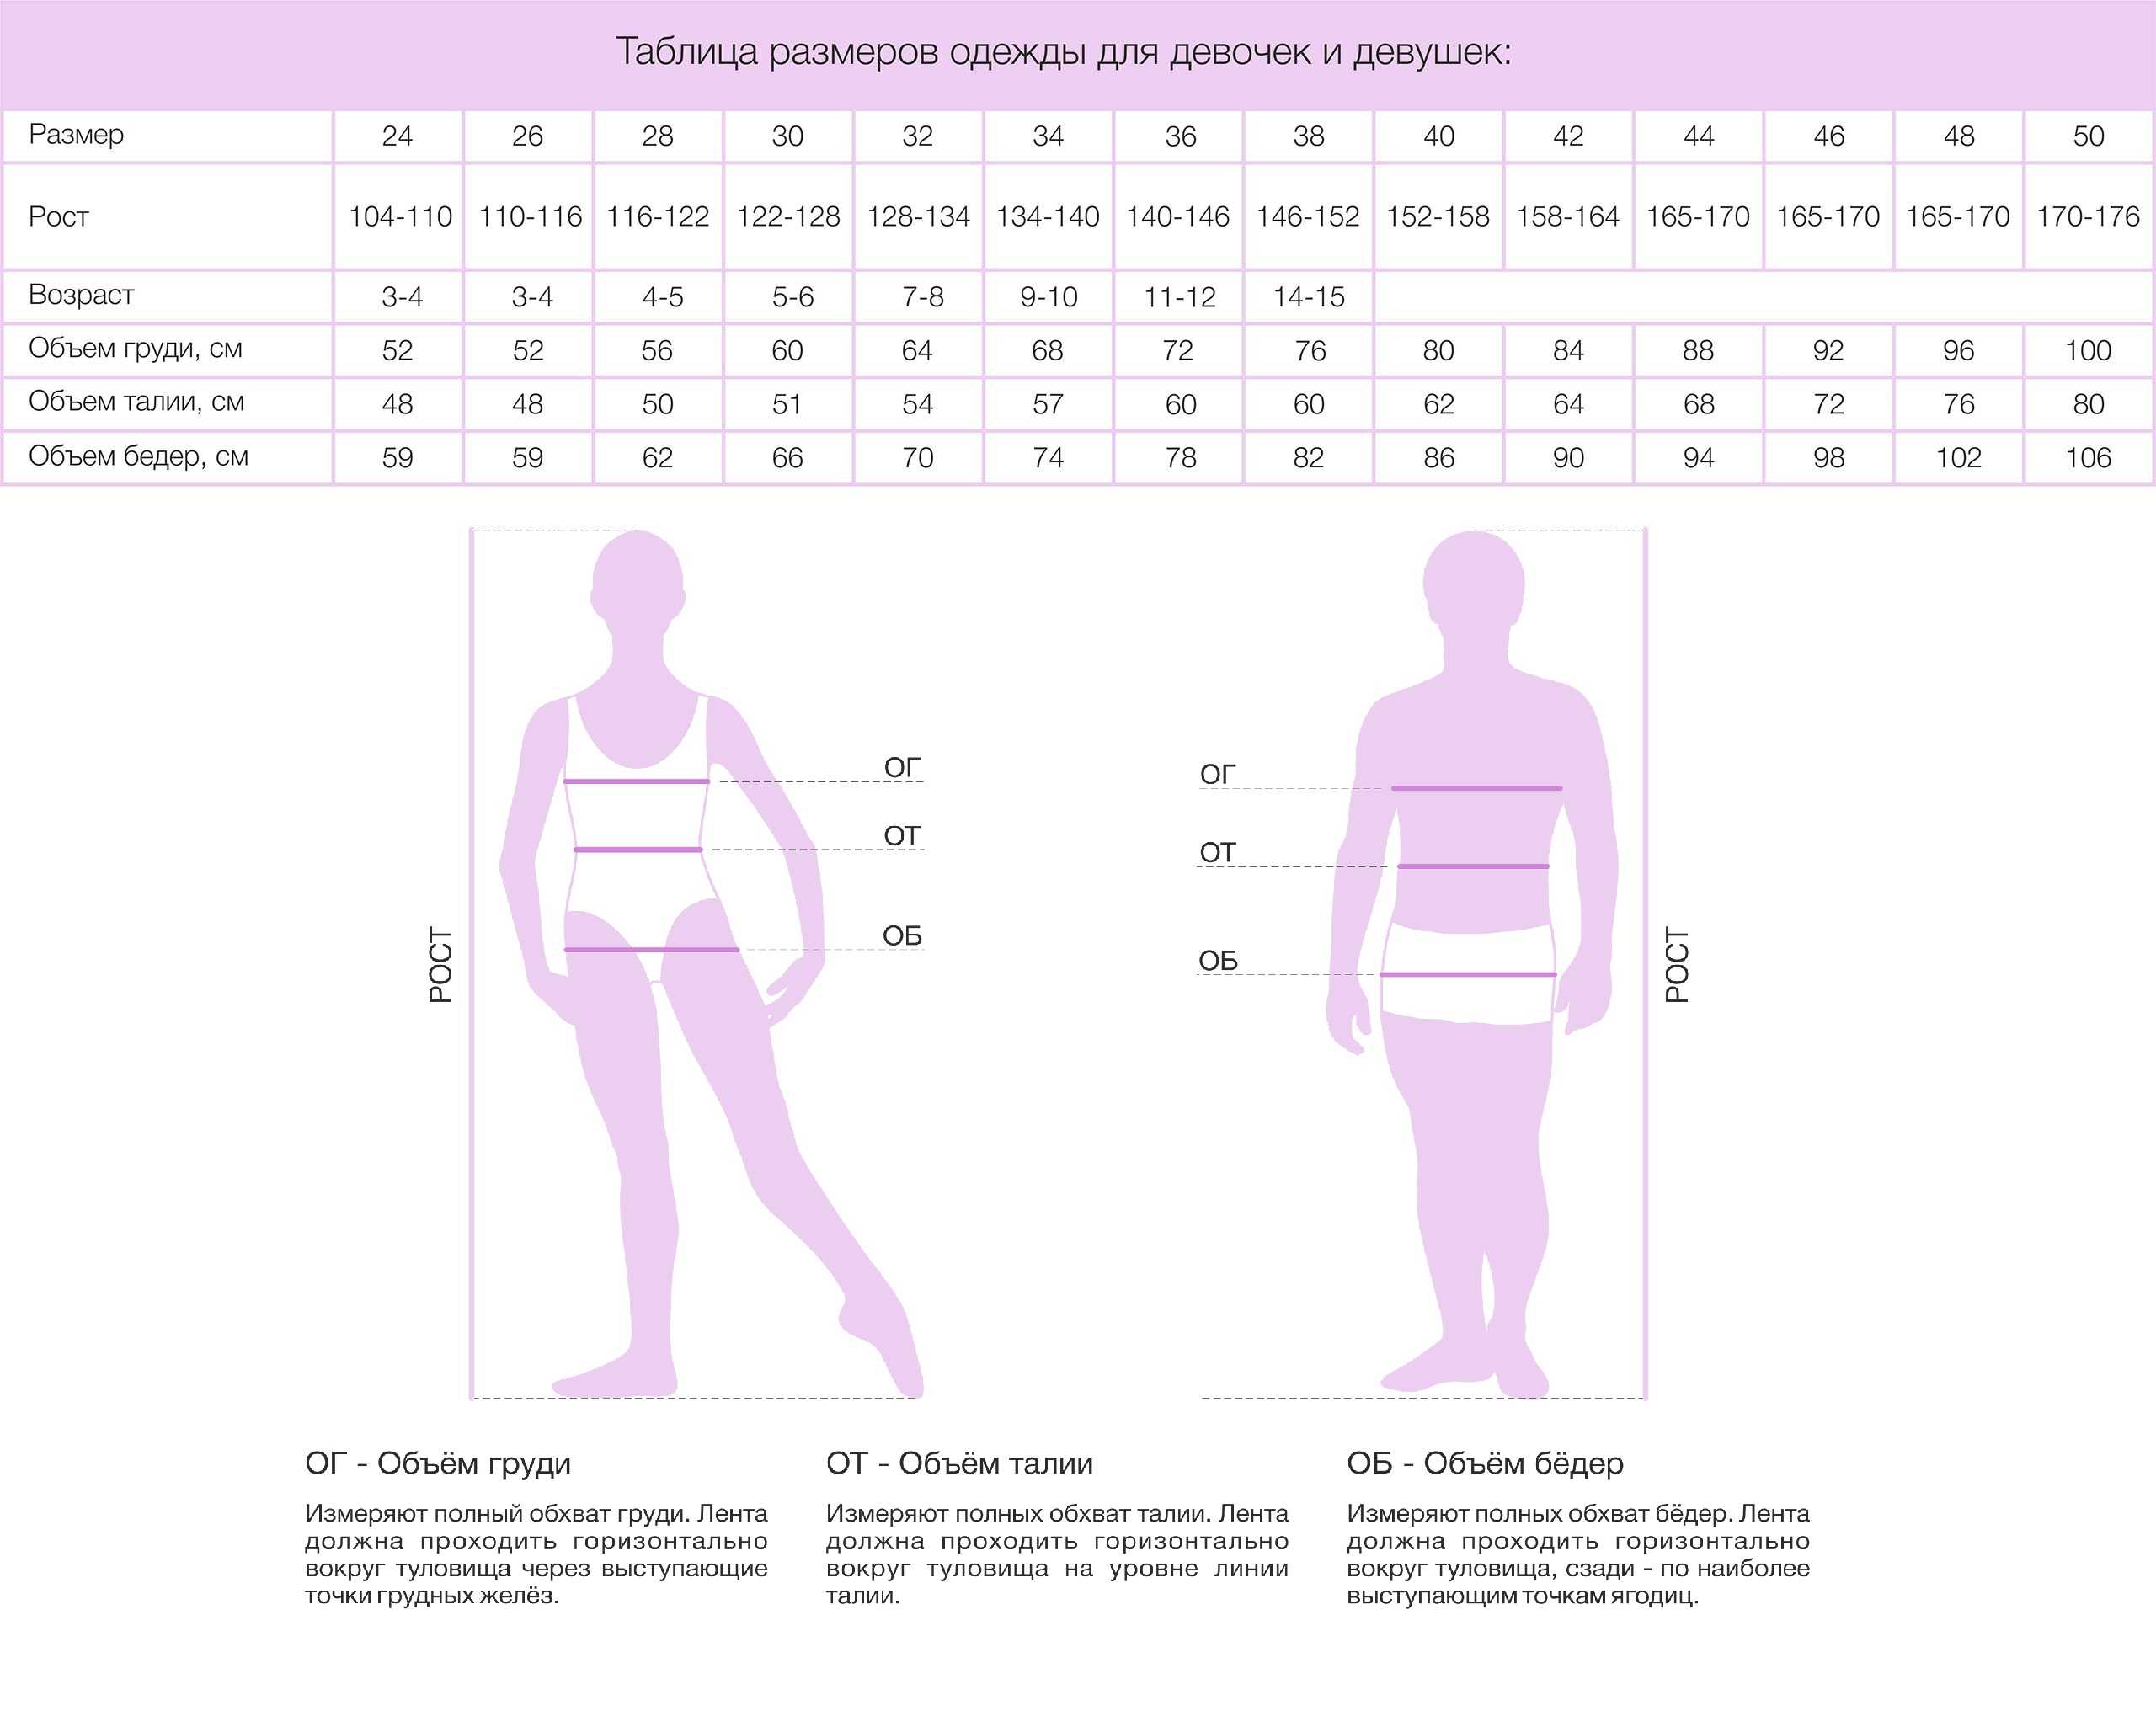 Таблица определения размера одежды для женщин